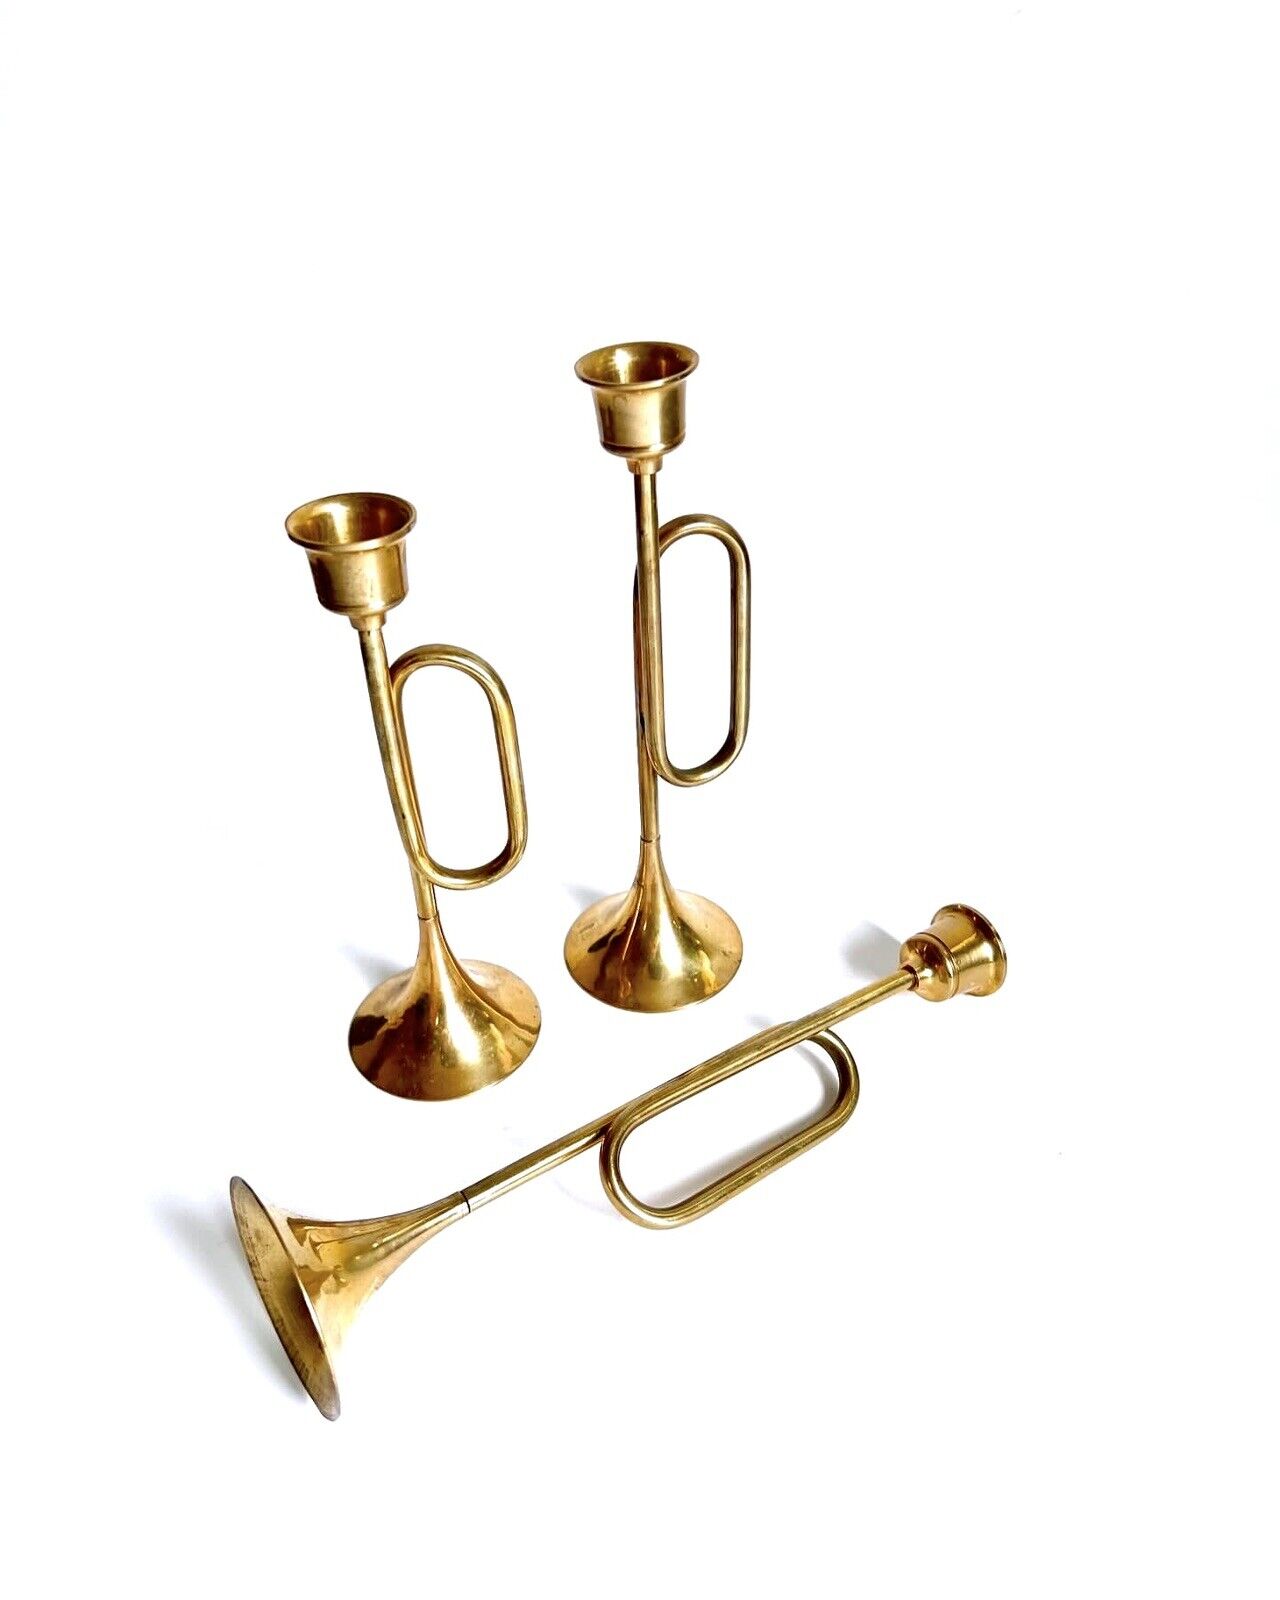 Vintage Brass Trumpet / Horn /Bugle Candlestick Holders Set of 3